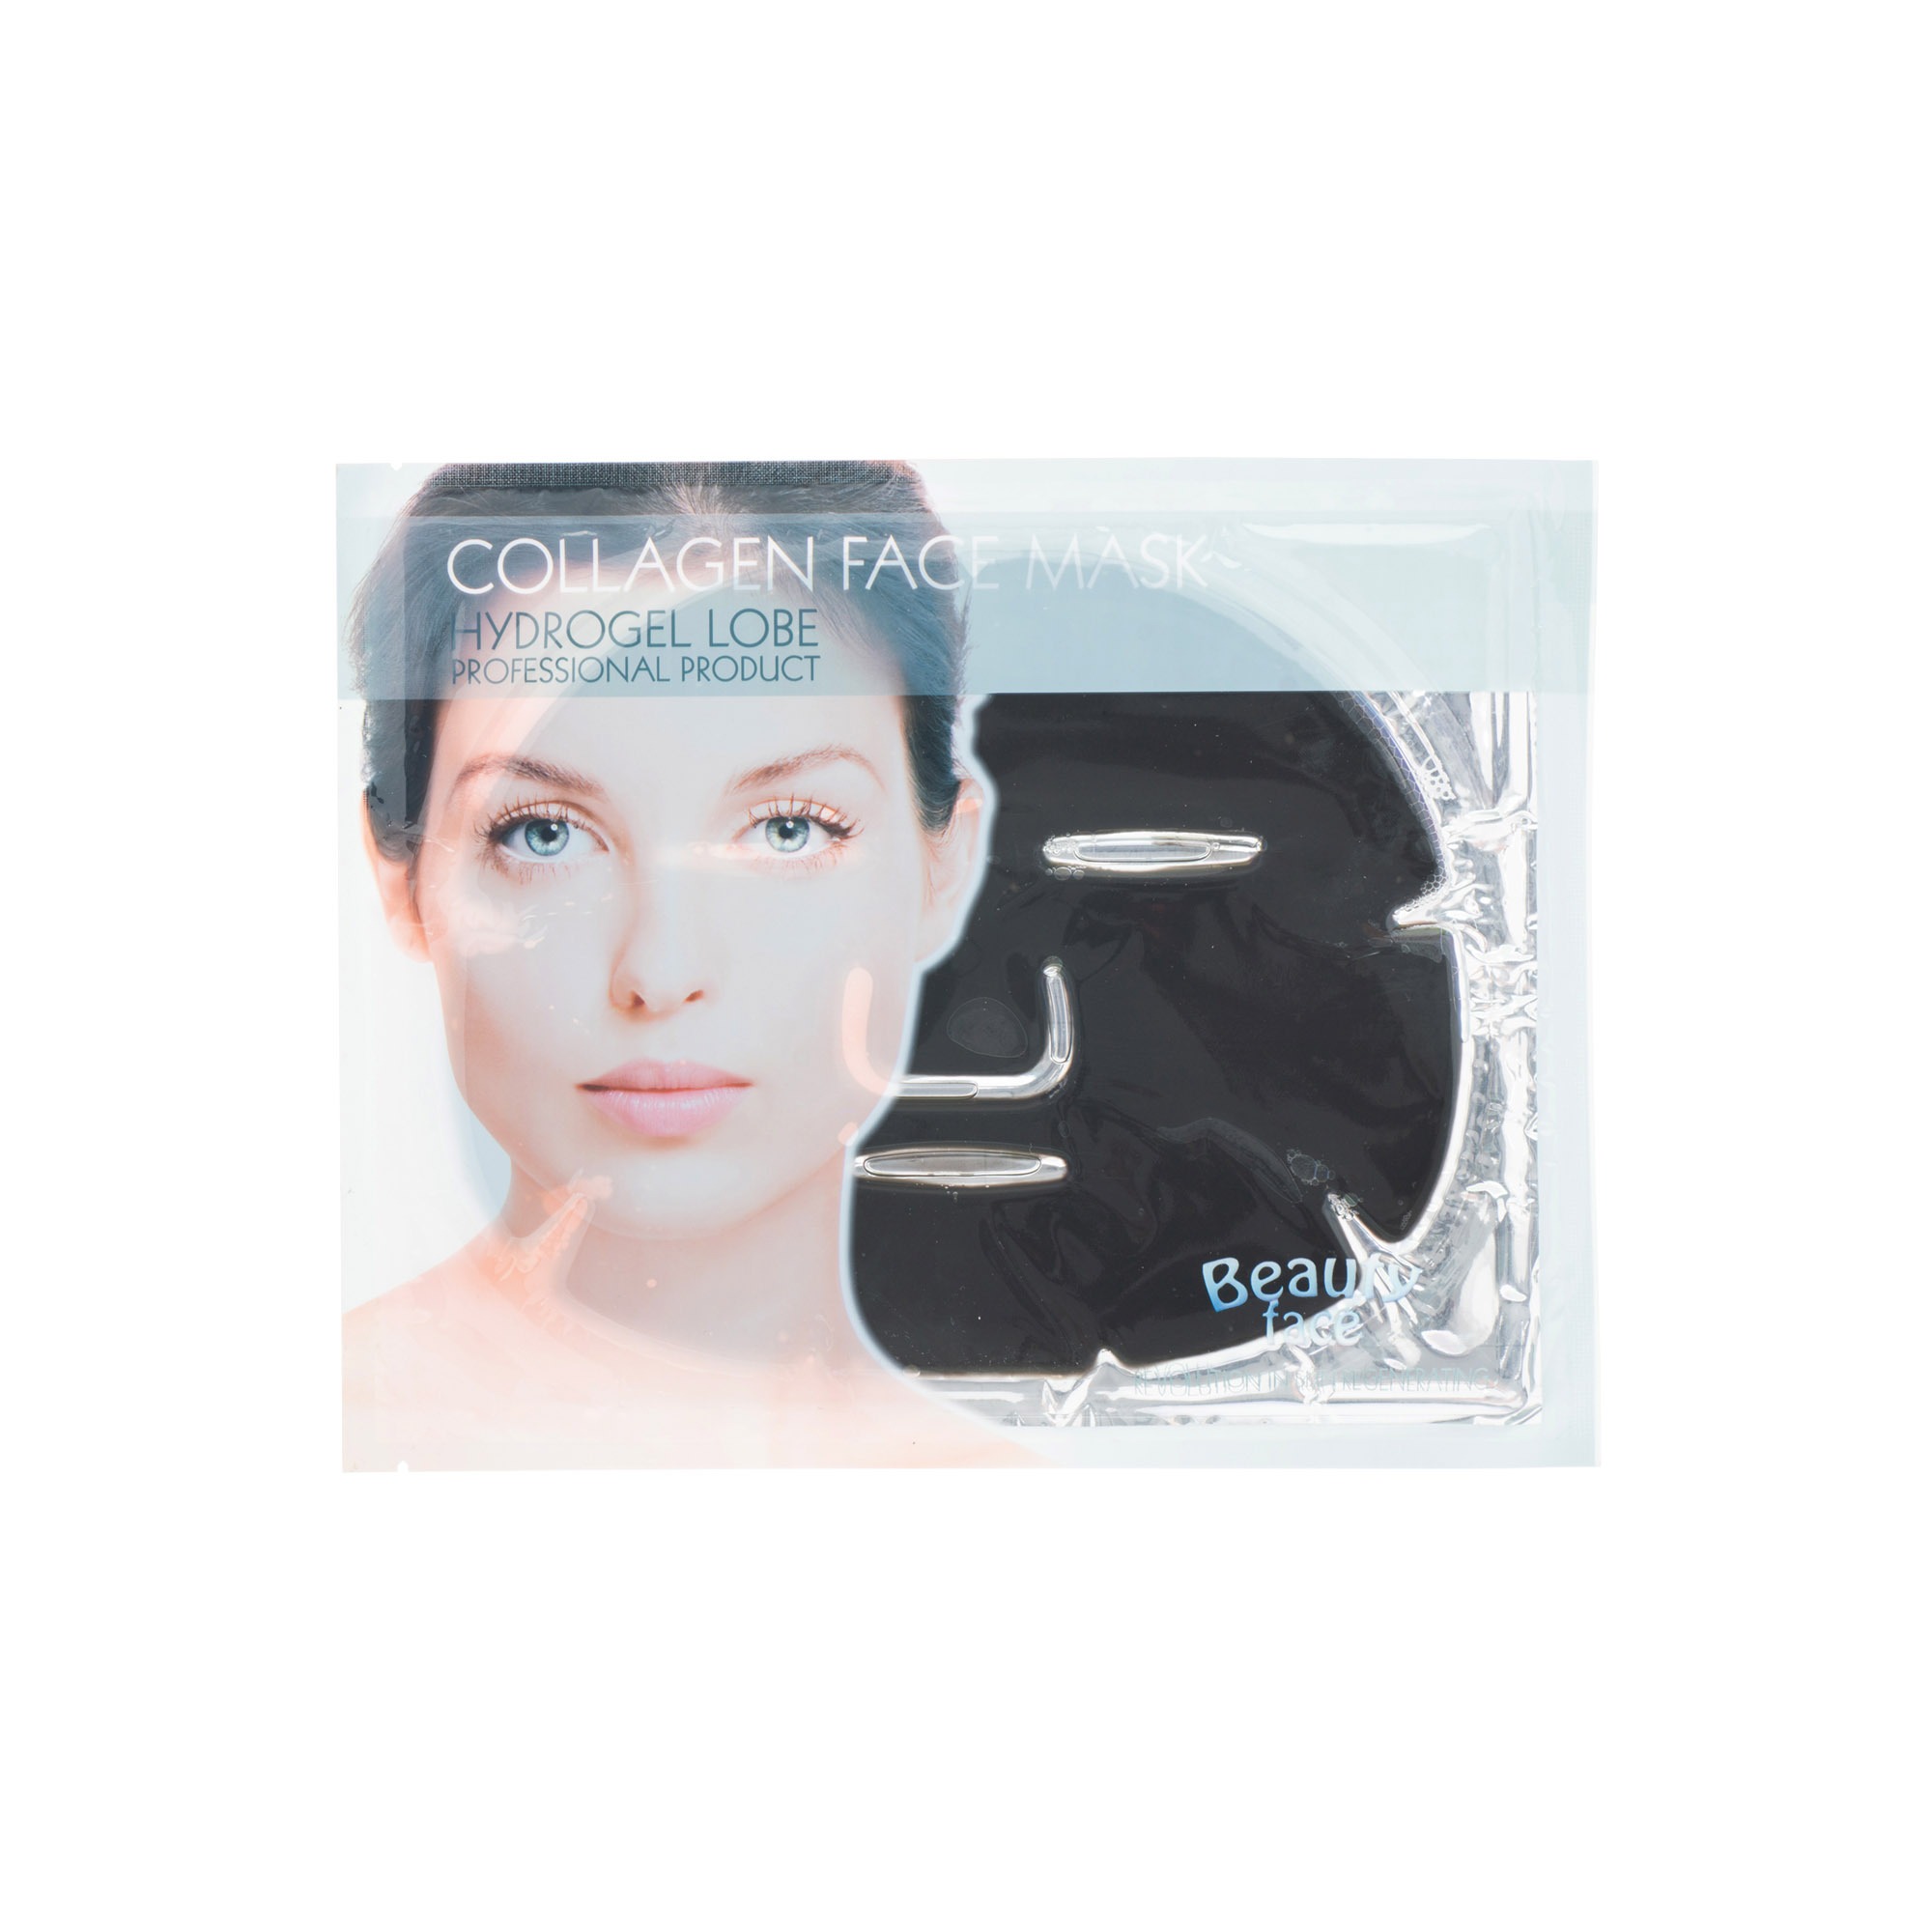 BeautyFace Maska kolagenowa antybakteryjno-oczyszczająca i zmniejszająca blizny data ważności – 12/2022